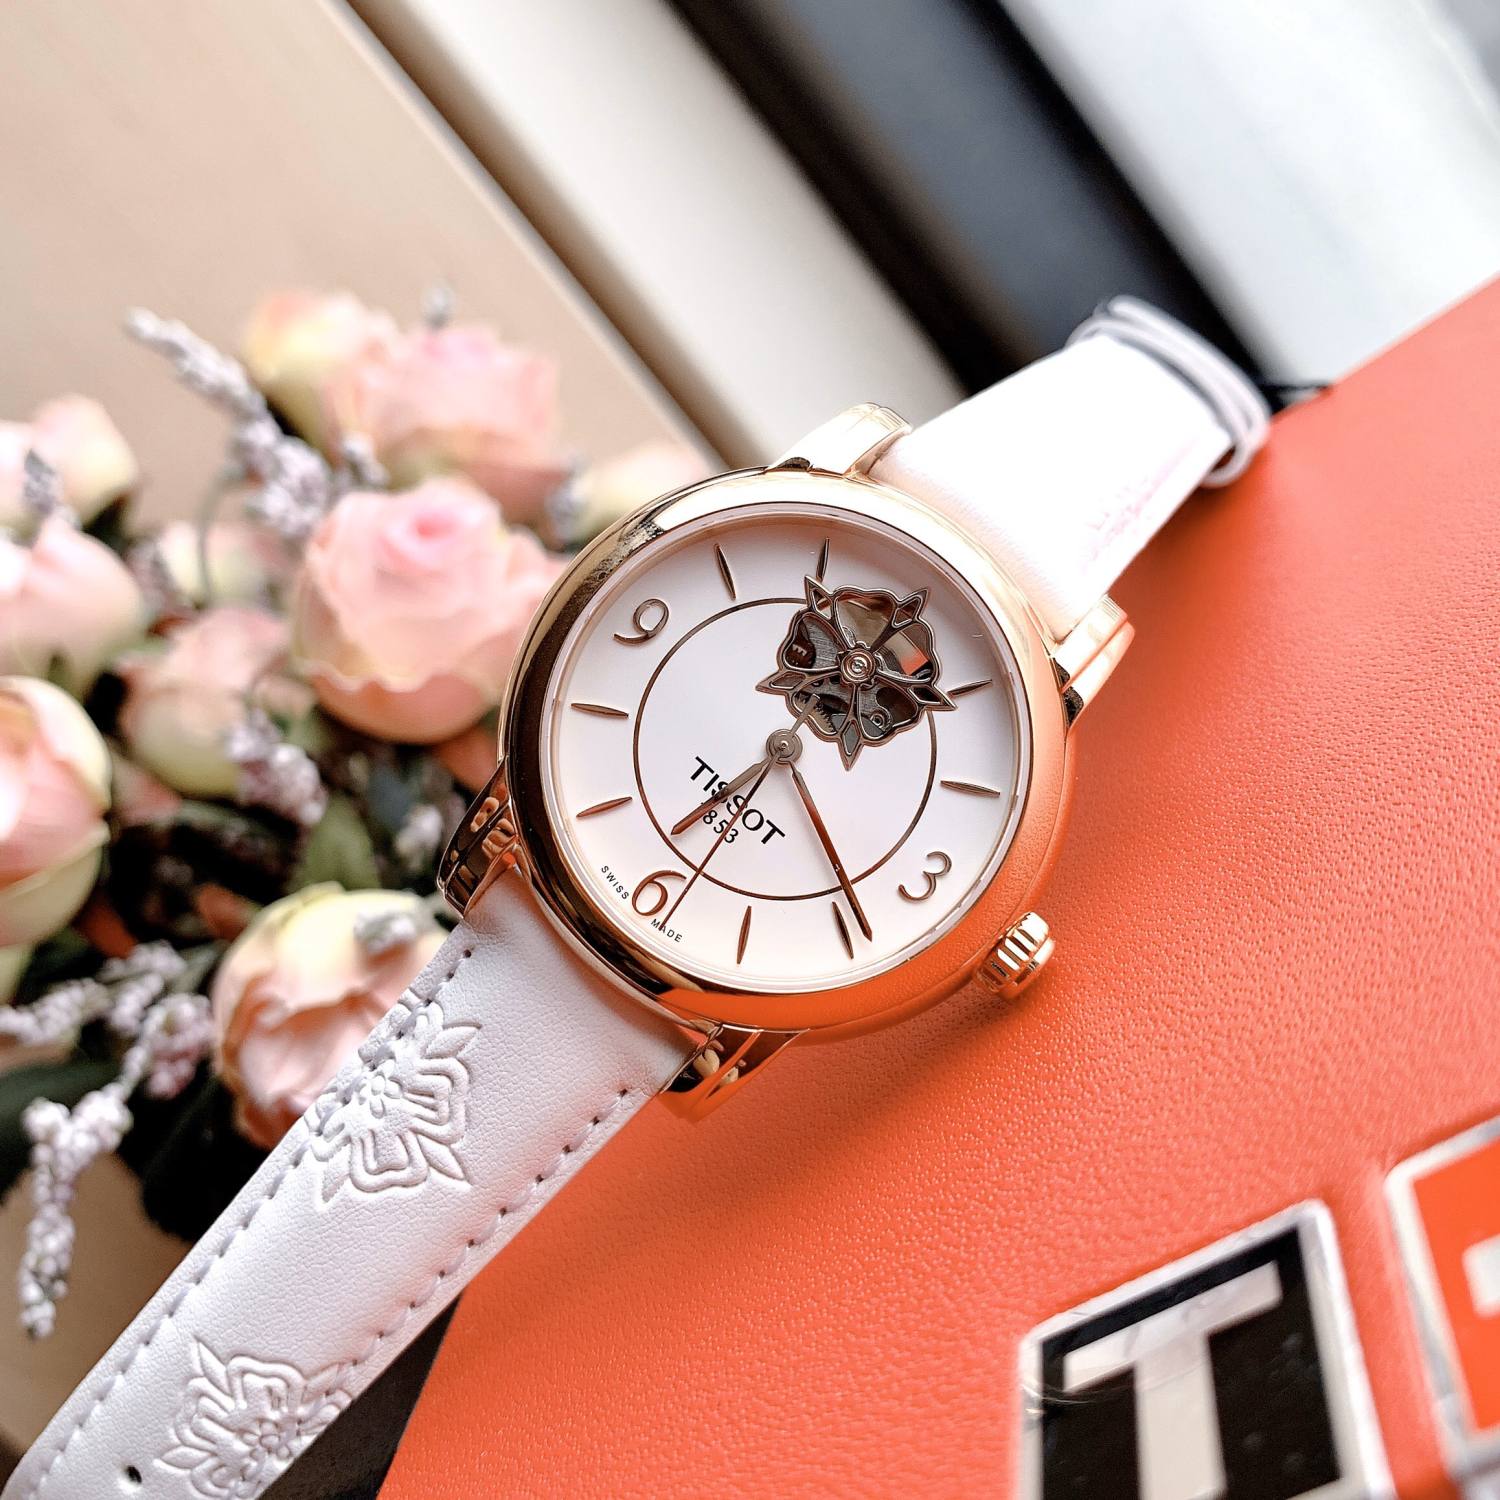 Đồng hồ Nữ chính hãng Tissot 1853 Automatic T050.207.37.017.04 Size 35,Hở tim,Mặt trắng-Máy cơ tự động-Dây da trắng cao cấp